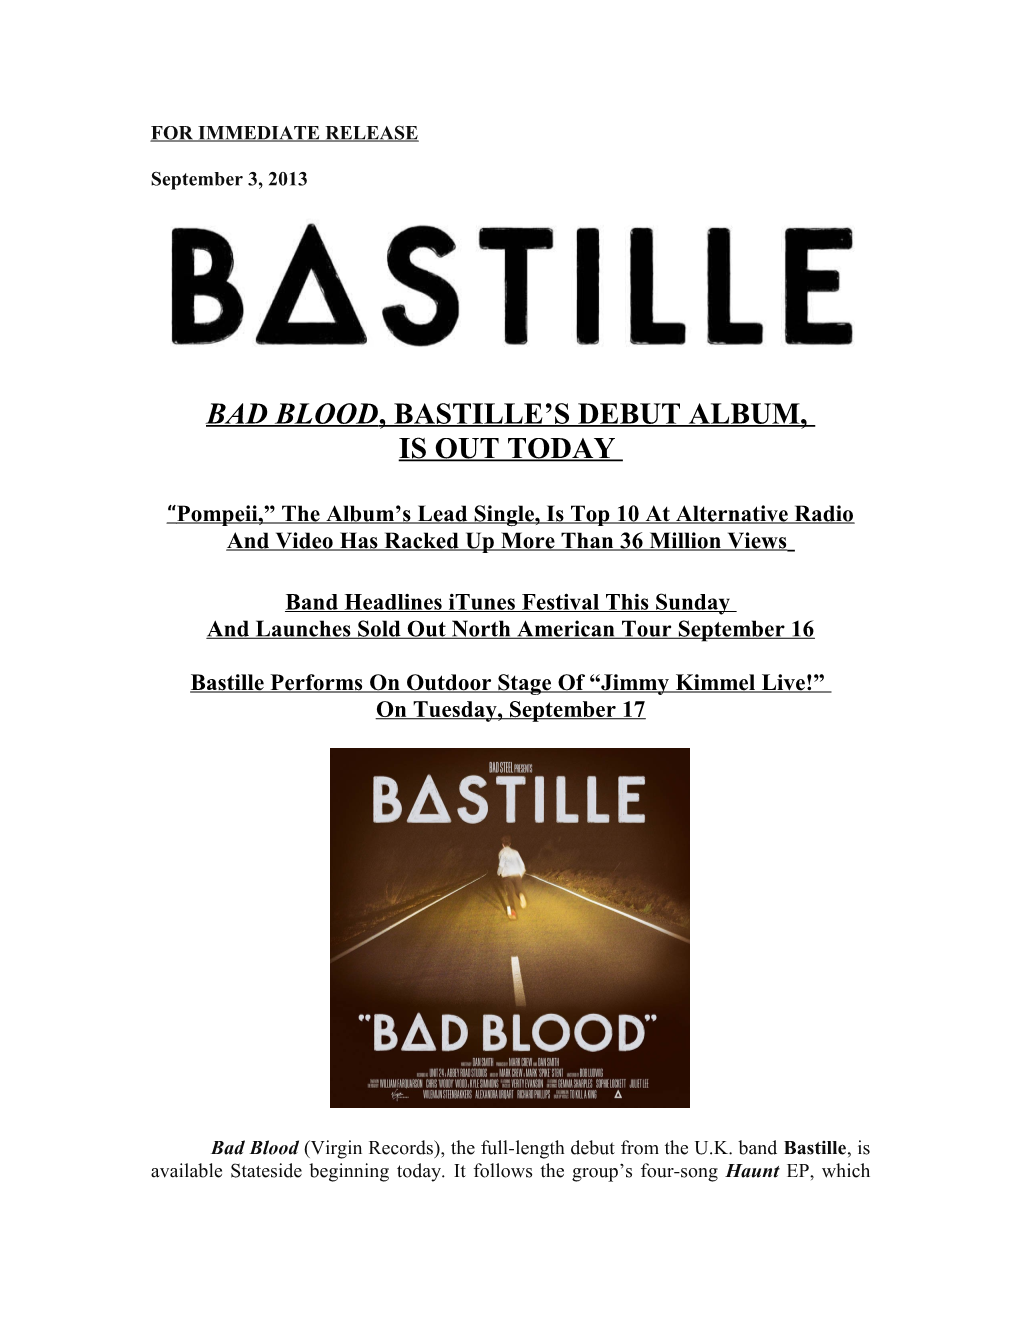 Bad Blood, Bastille S Debut ALBUM